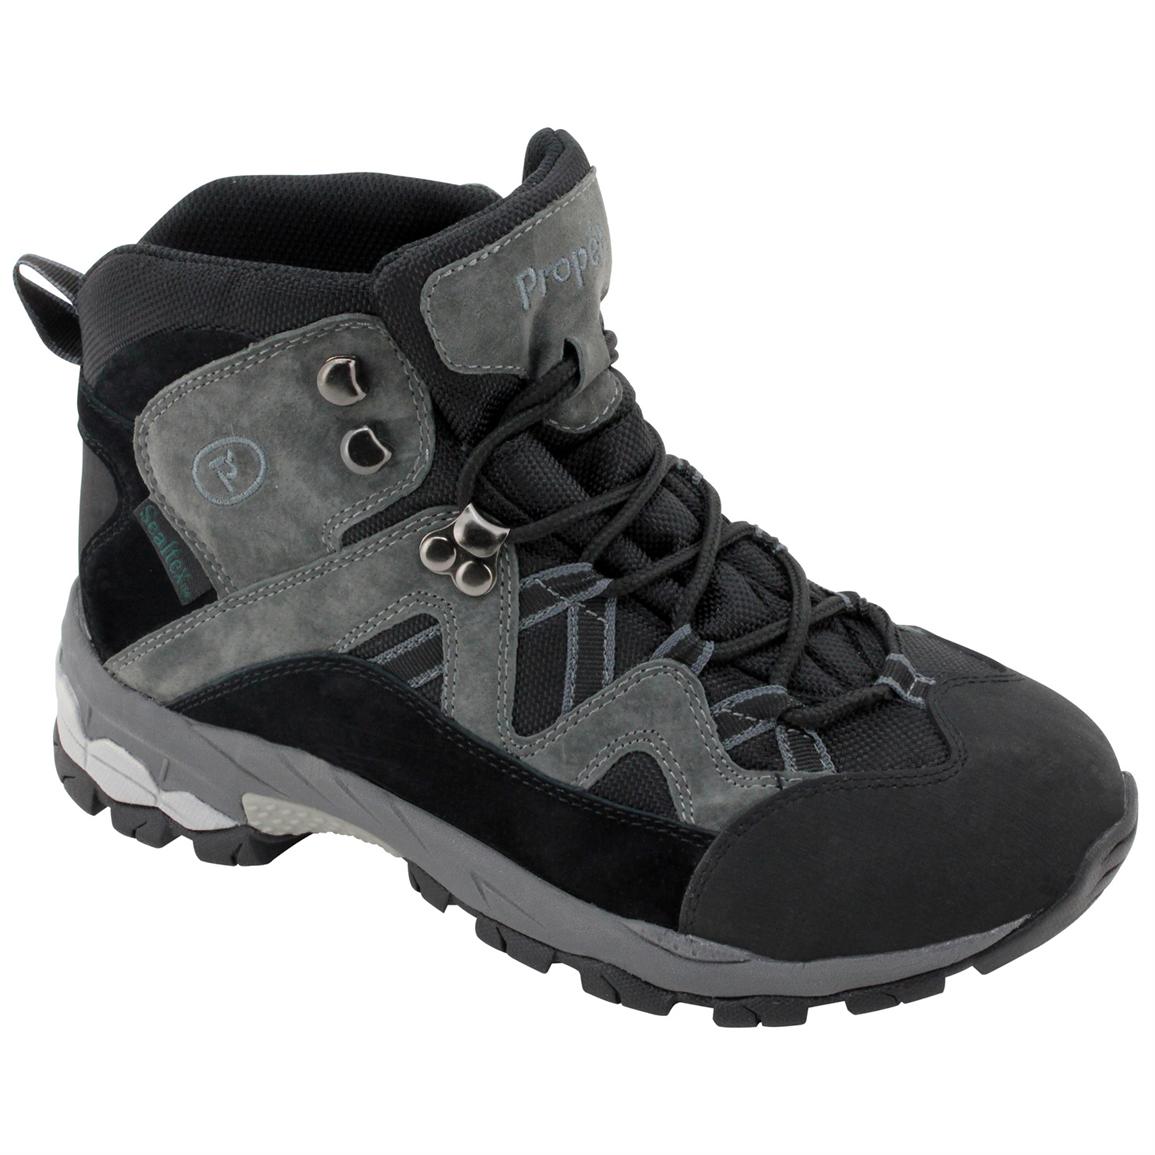 Men s Propet  Eiger  Waterproof Mid Hiking Boots  234496 